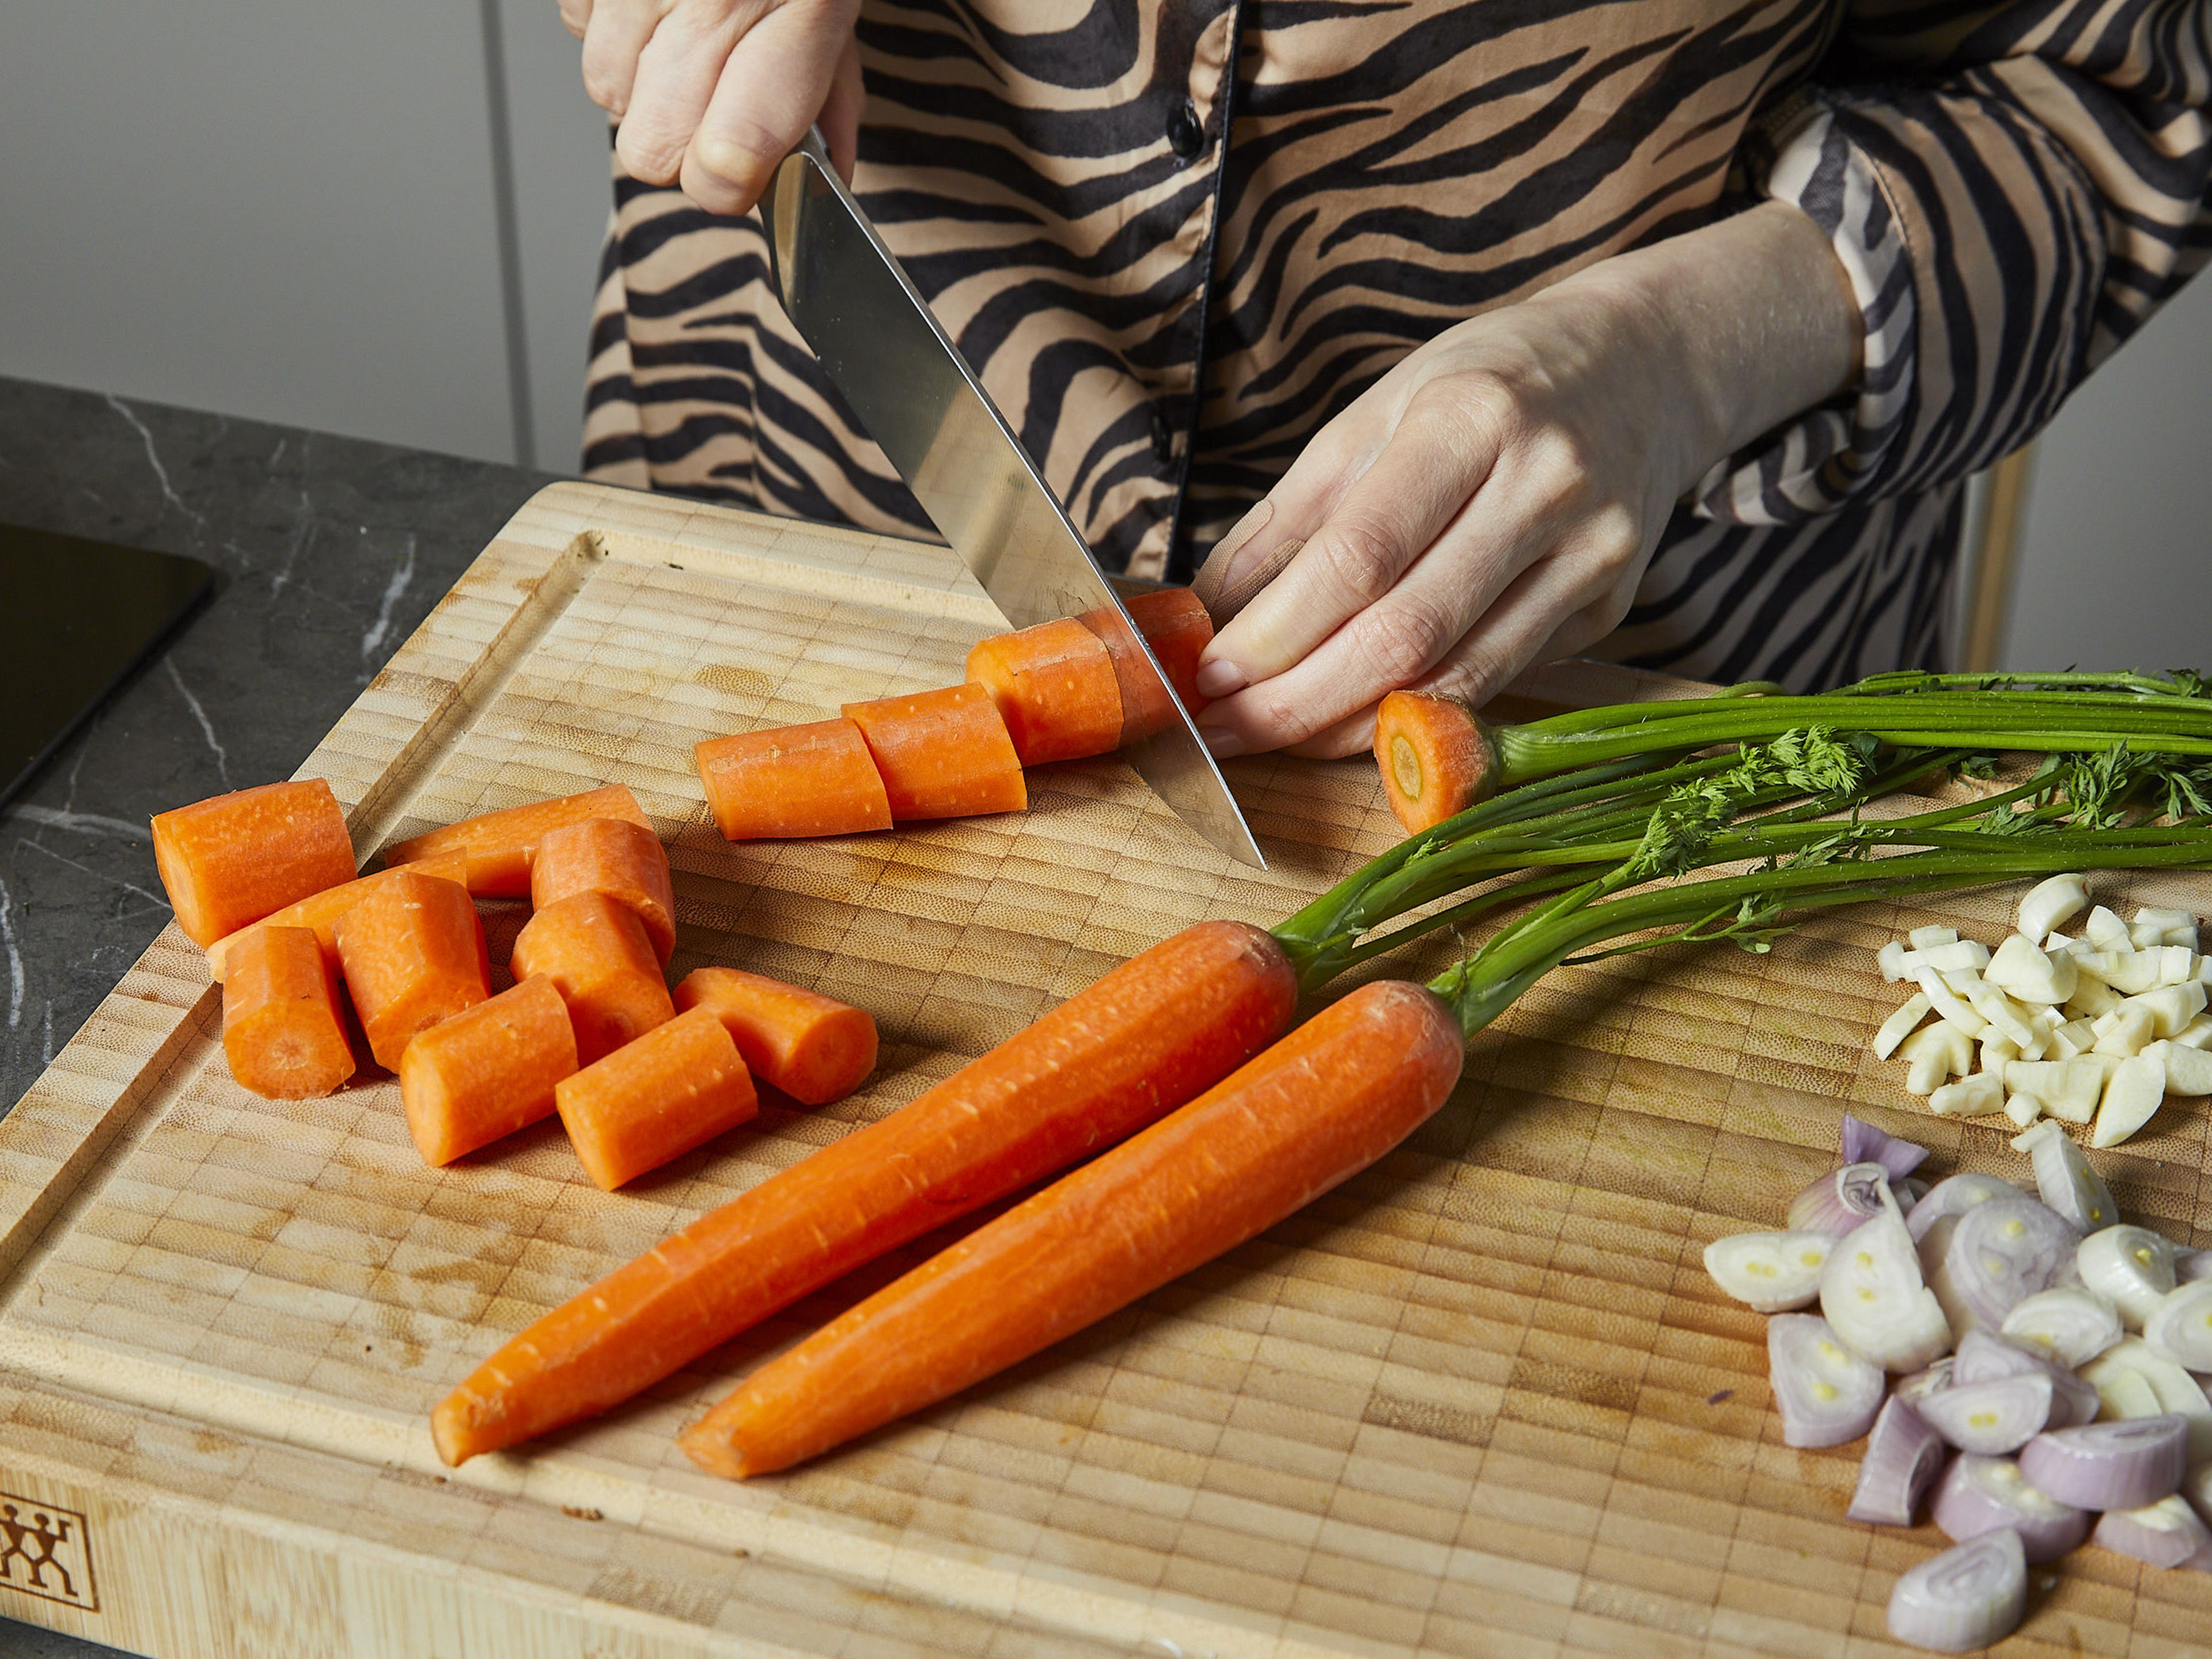 Das Karottengrün ca. 15 cm über dem Strunk abschneiden und für die weitere Verwendung beiseite legen, die Stiele und den Strunk entfernen. Den Knoblauch, die Schalotten und die Karotten schälen und grob hacken. Den Parmesankäse reiben. Die Zitrone abreiben und auspressen. In einem großen Topf das Wasser für die Nudeln zum Kochen bringen und gut salzen.